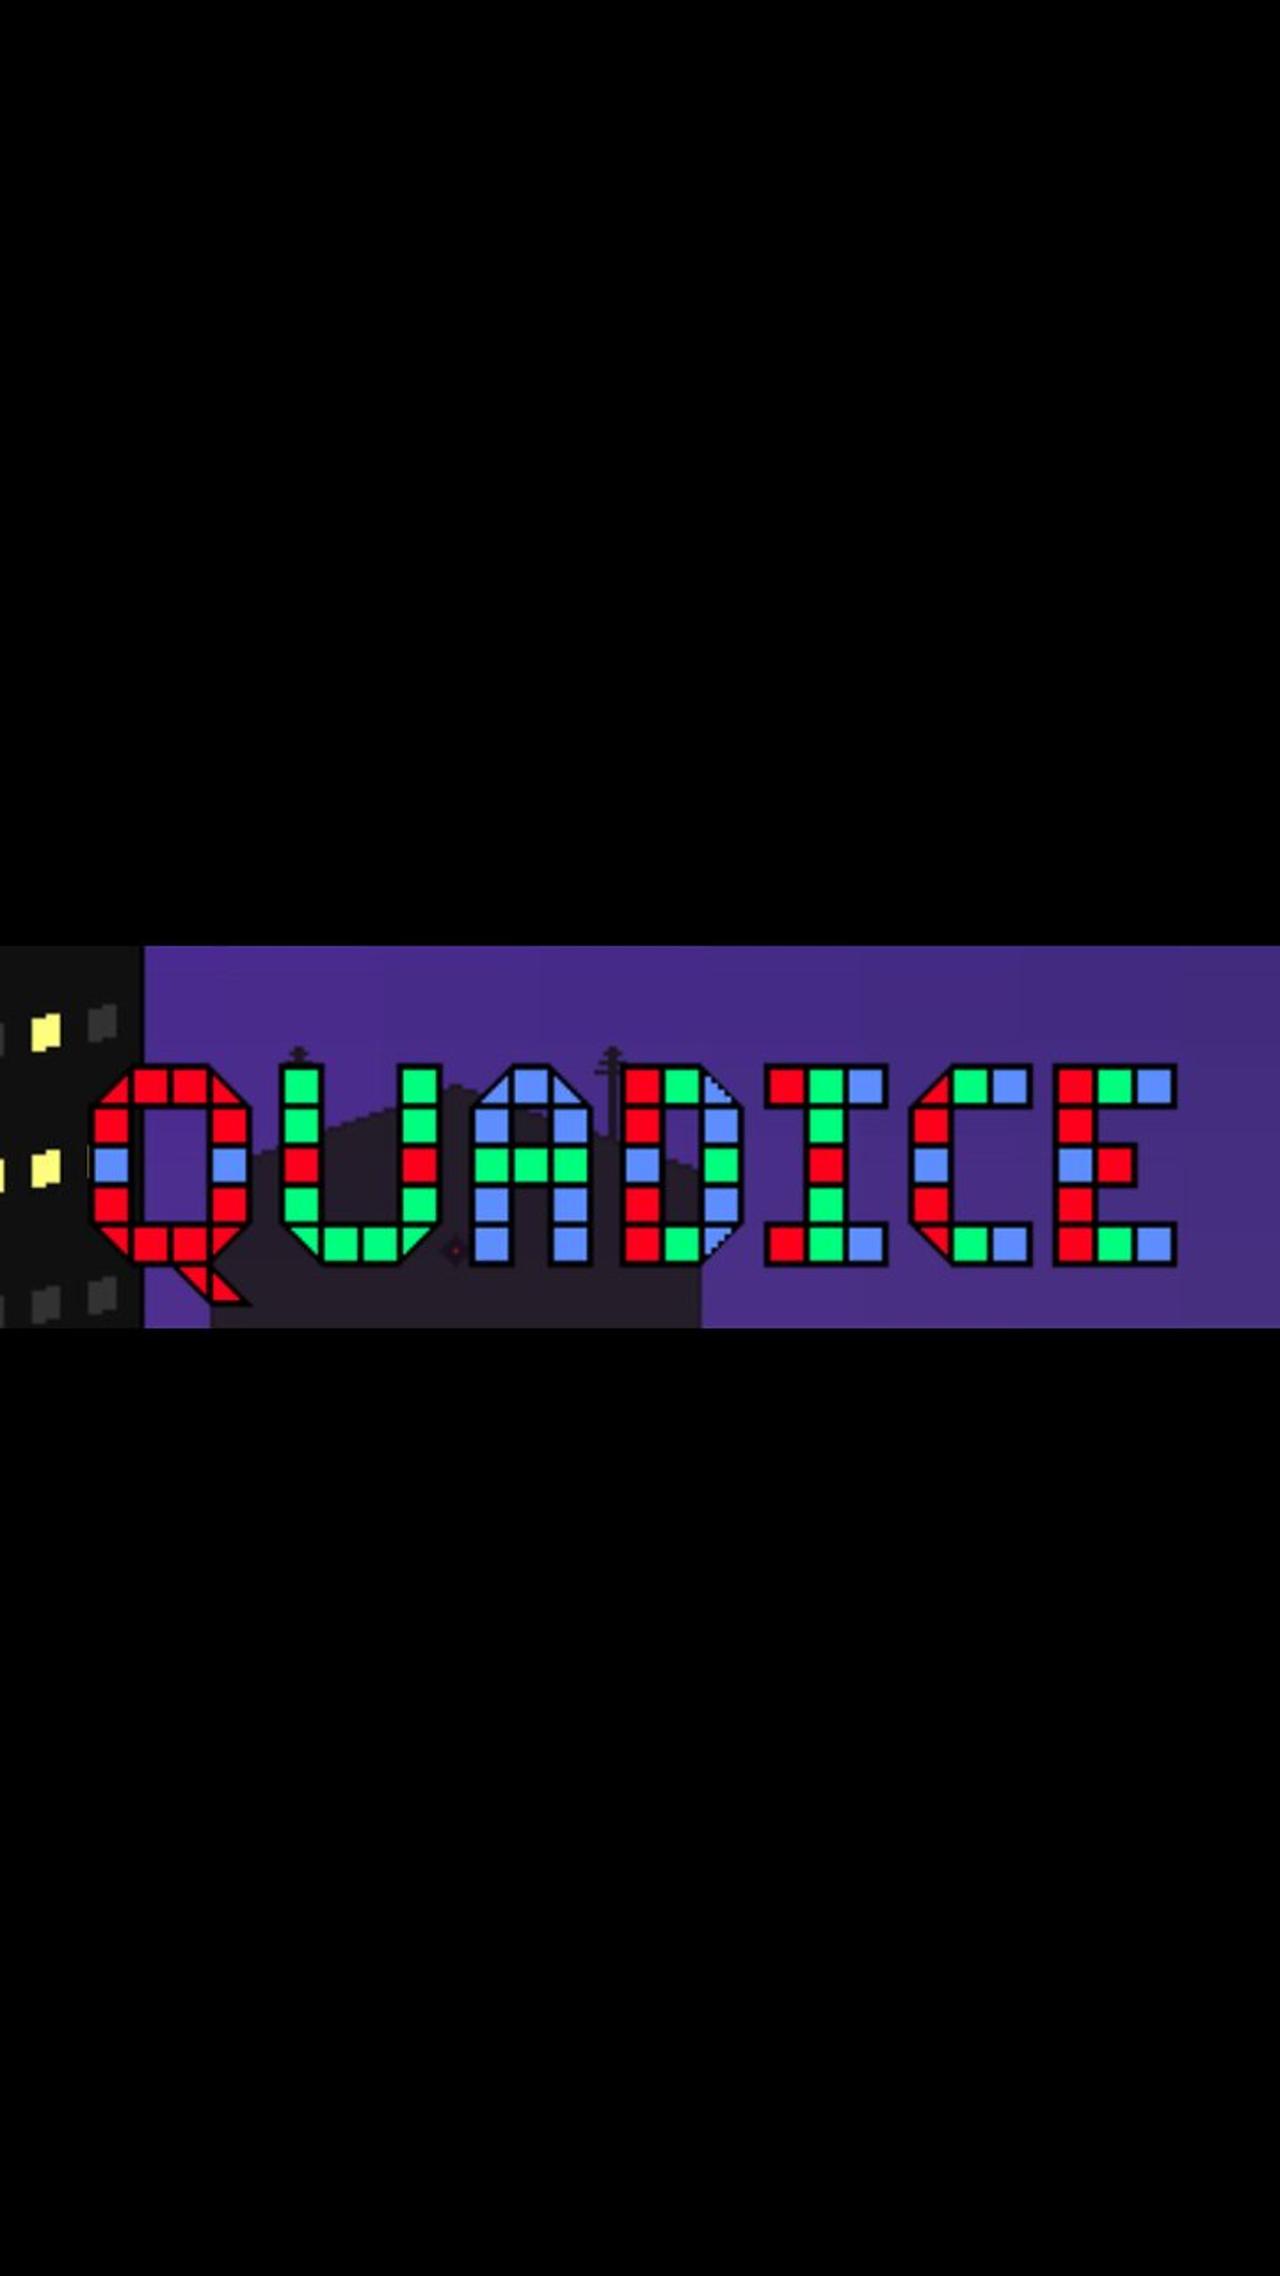 new game called Quadice!